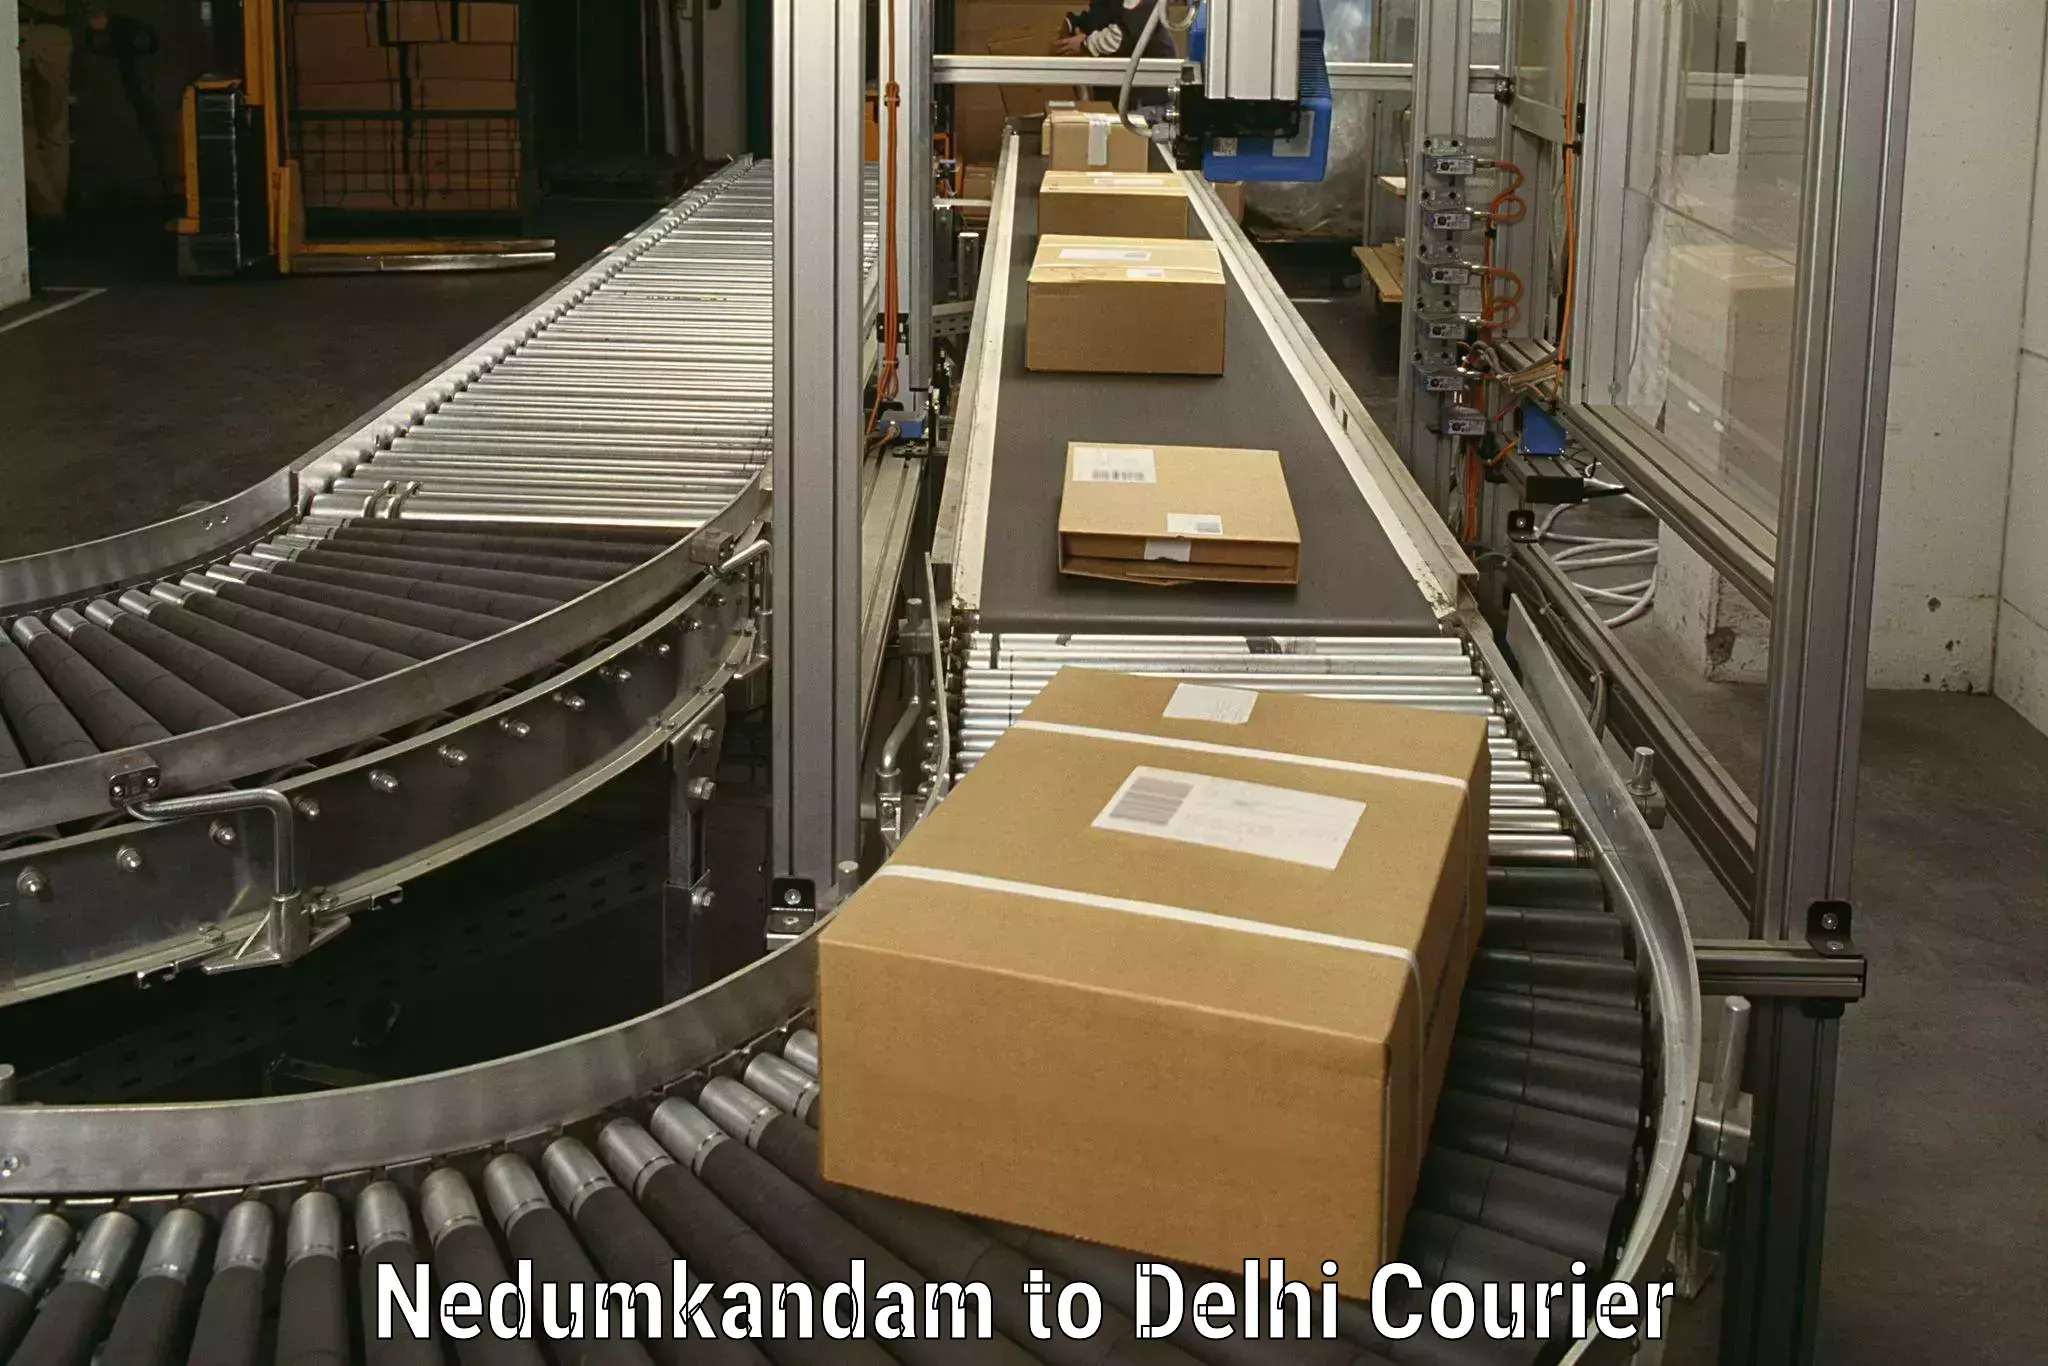 Moving and packing experts Nedumkandam to Delhi